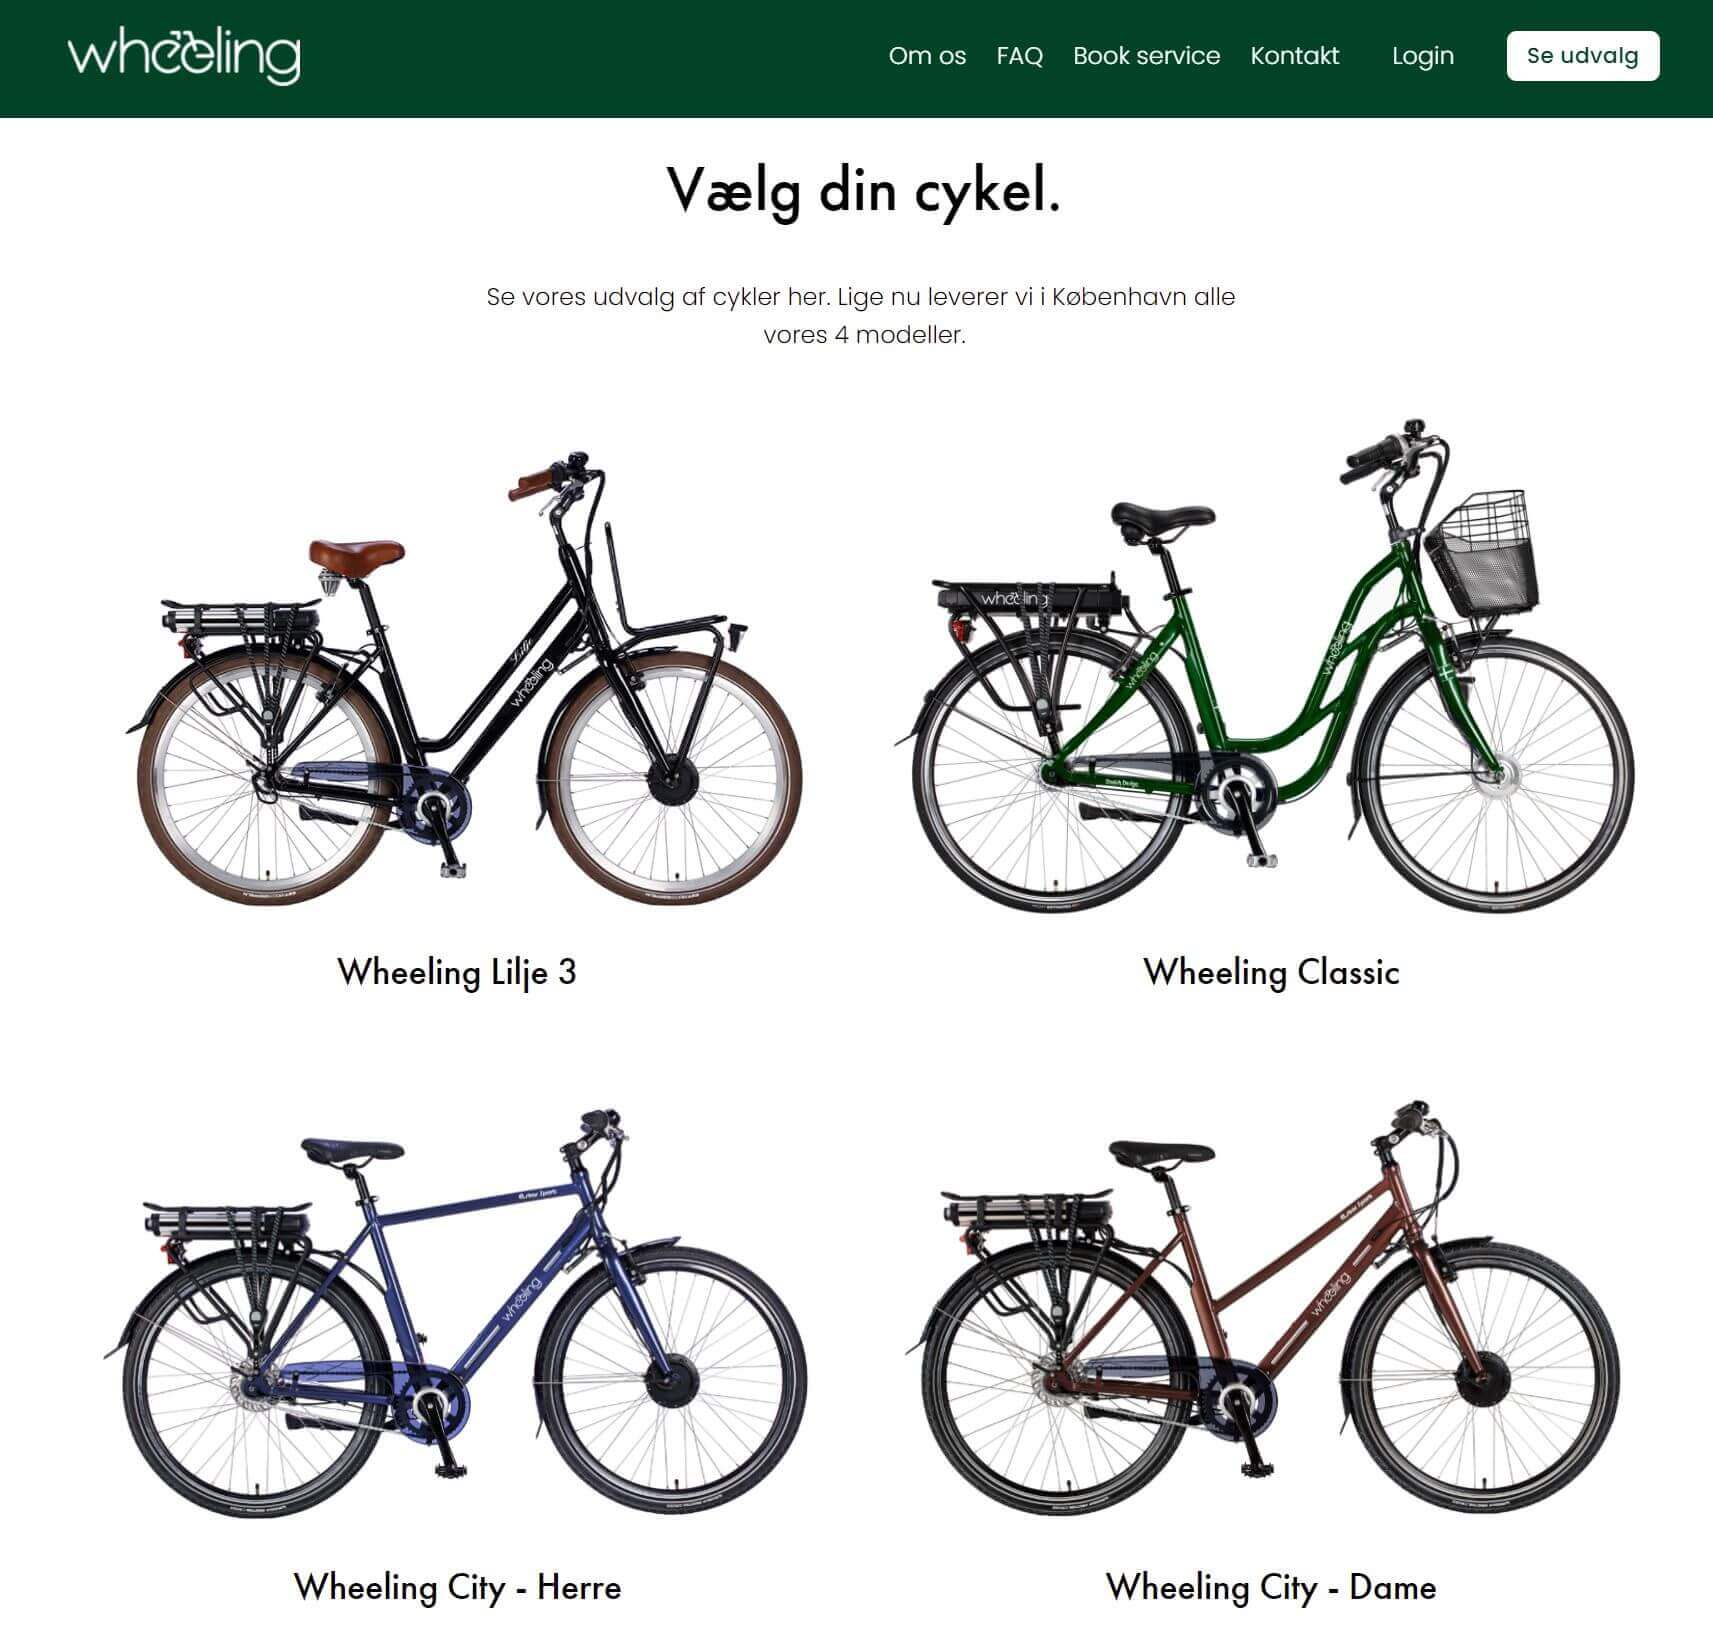 Billig el-cykel sammenlign priser og penge – betal den rigtig for din elcykel